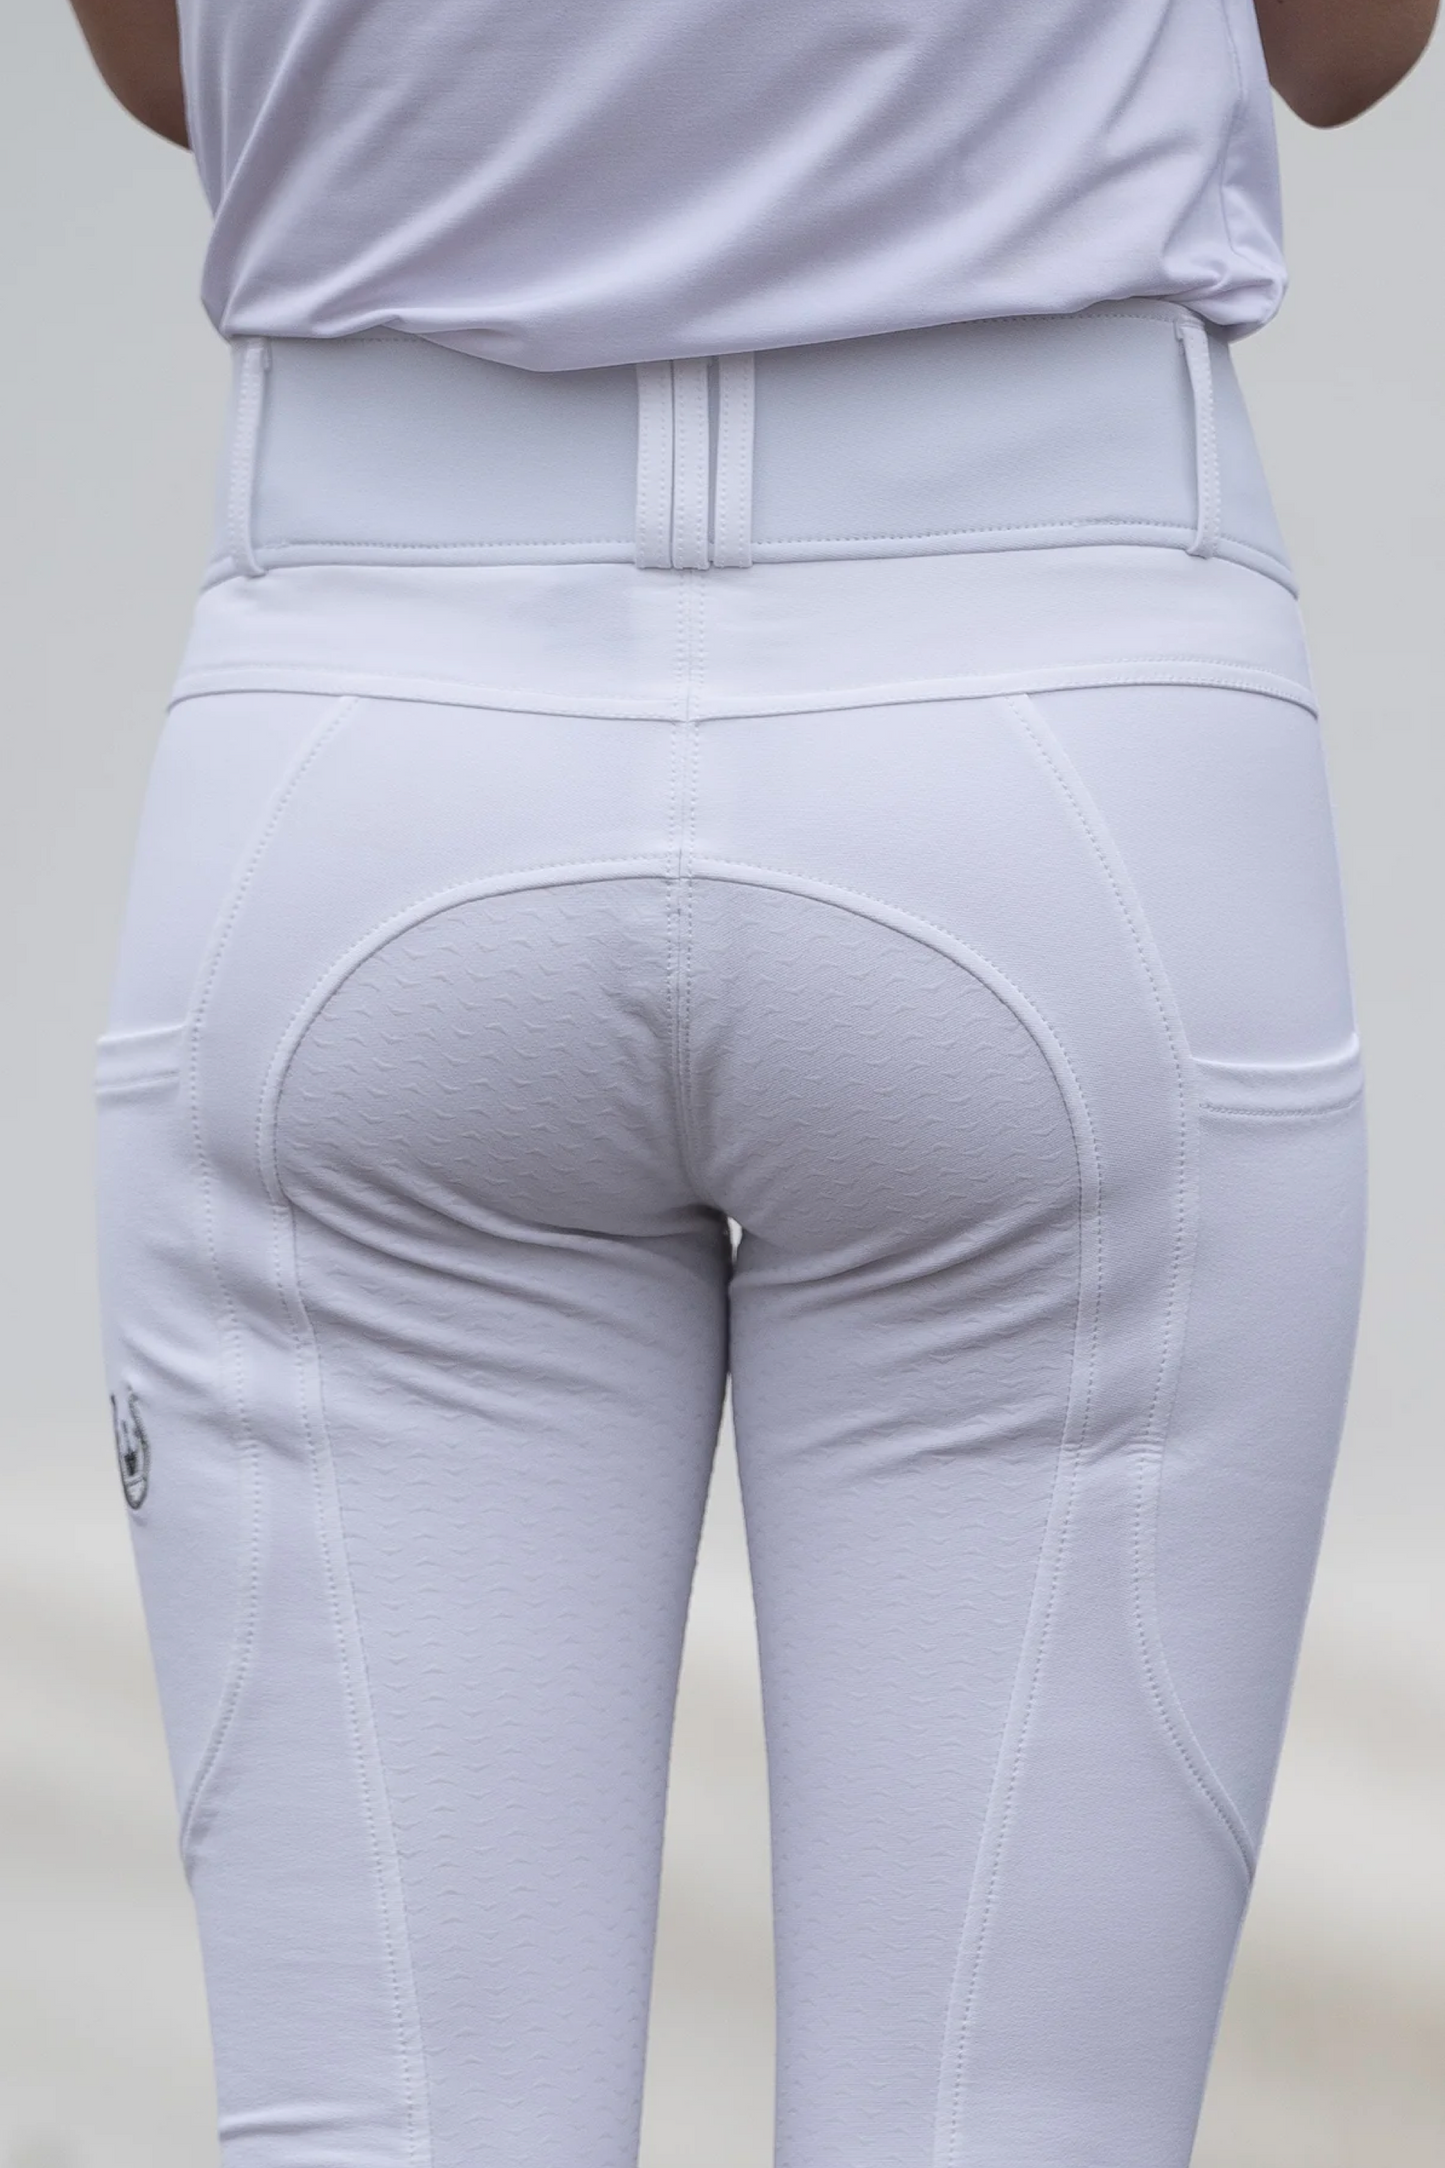 Pantalon compétition équitation blanc femme Leveza Brittany